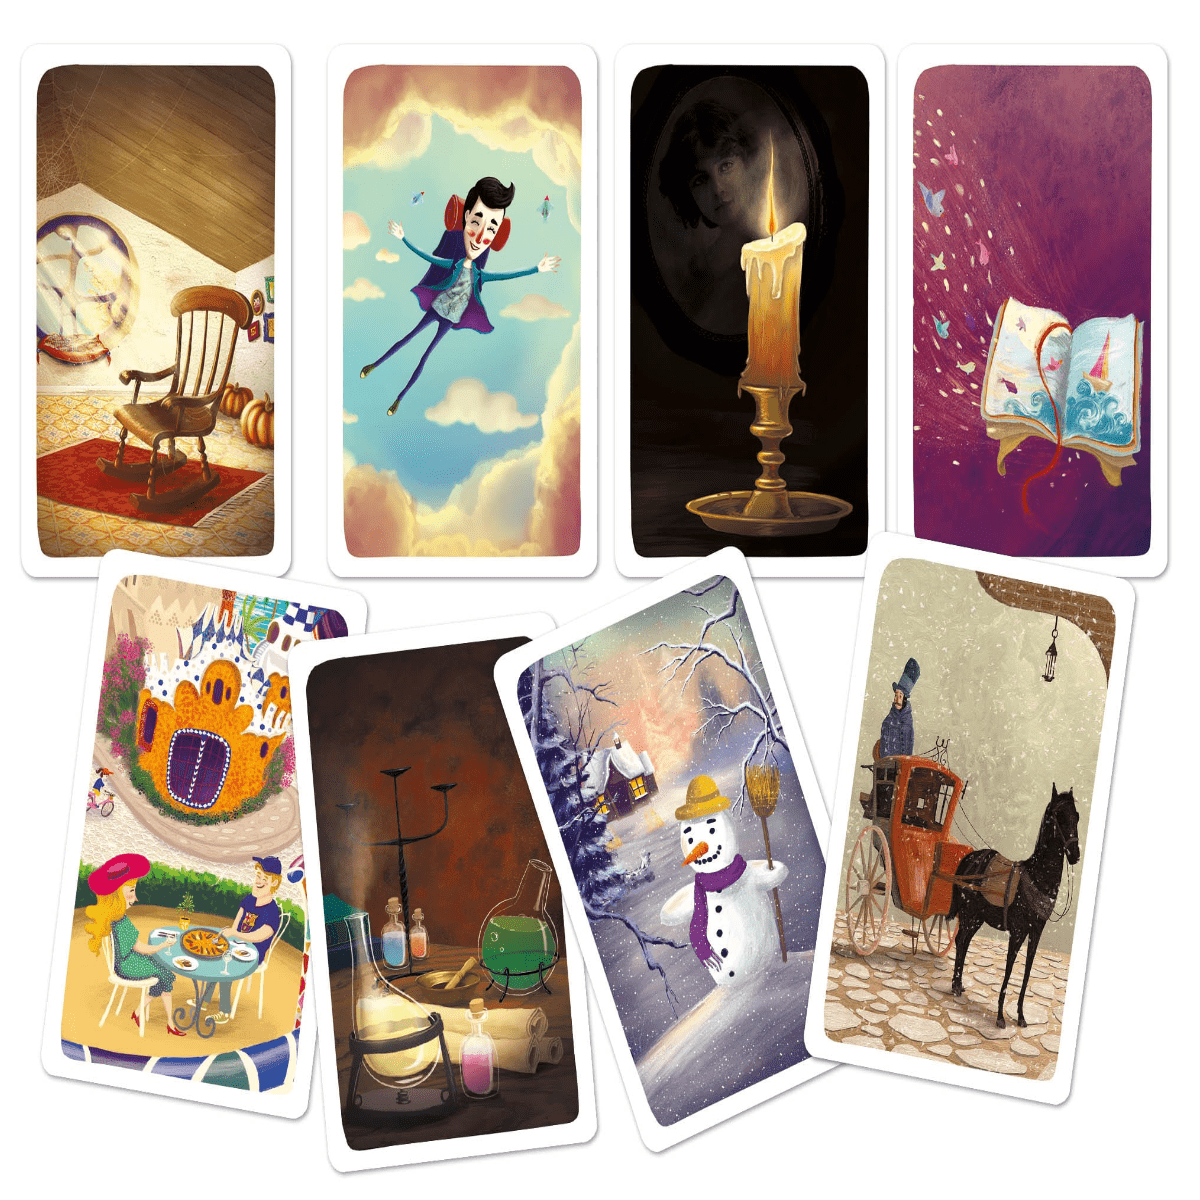 My Story Cards | Il gioco per allenare fantasia ed immaginazione!